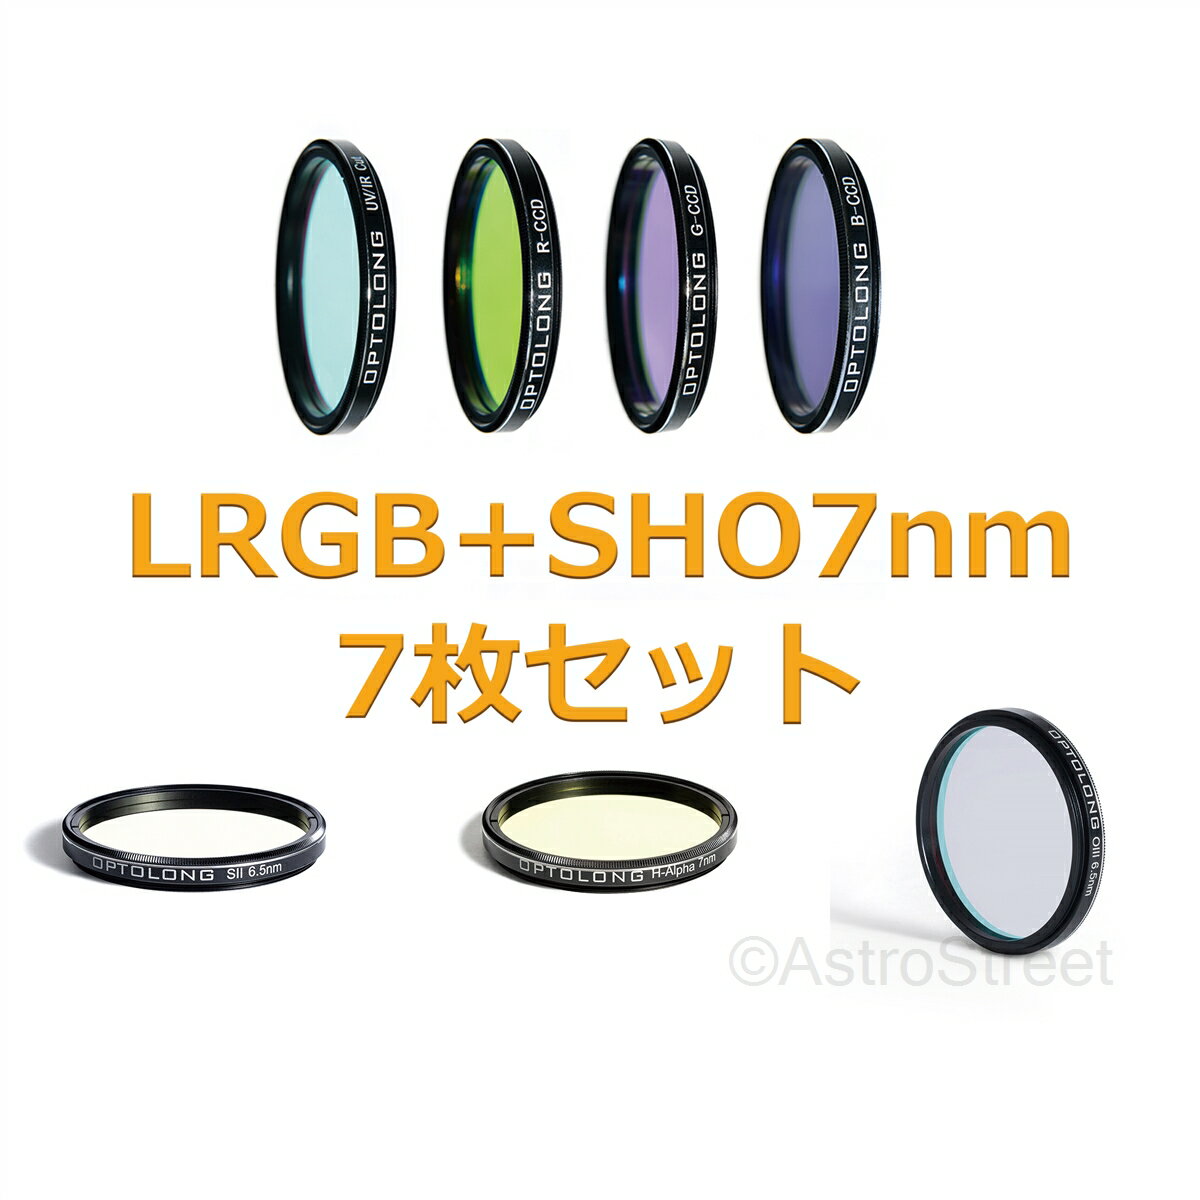 Optolong LRGB SHO 7nm 36mm x 2mm@gȂ 7Zbg BF2022